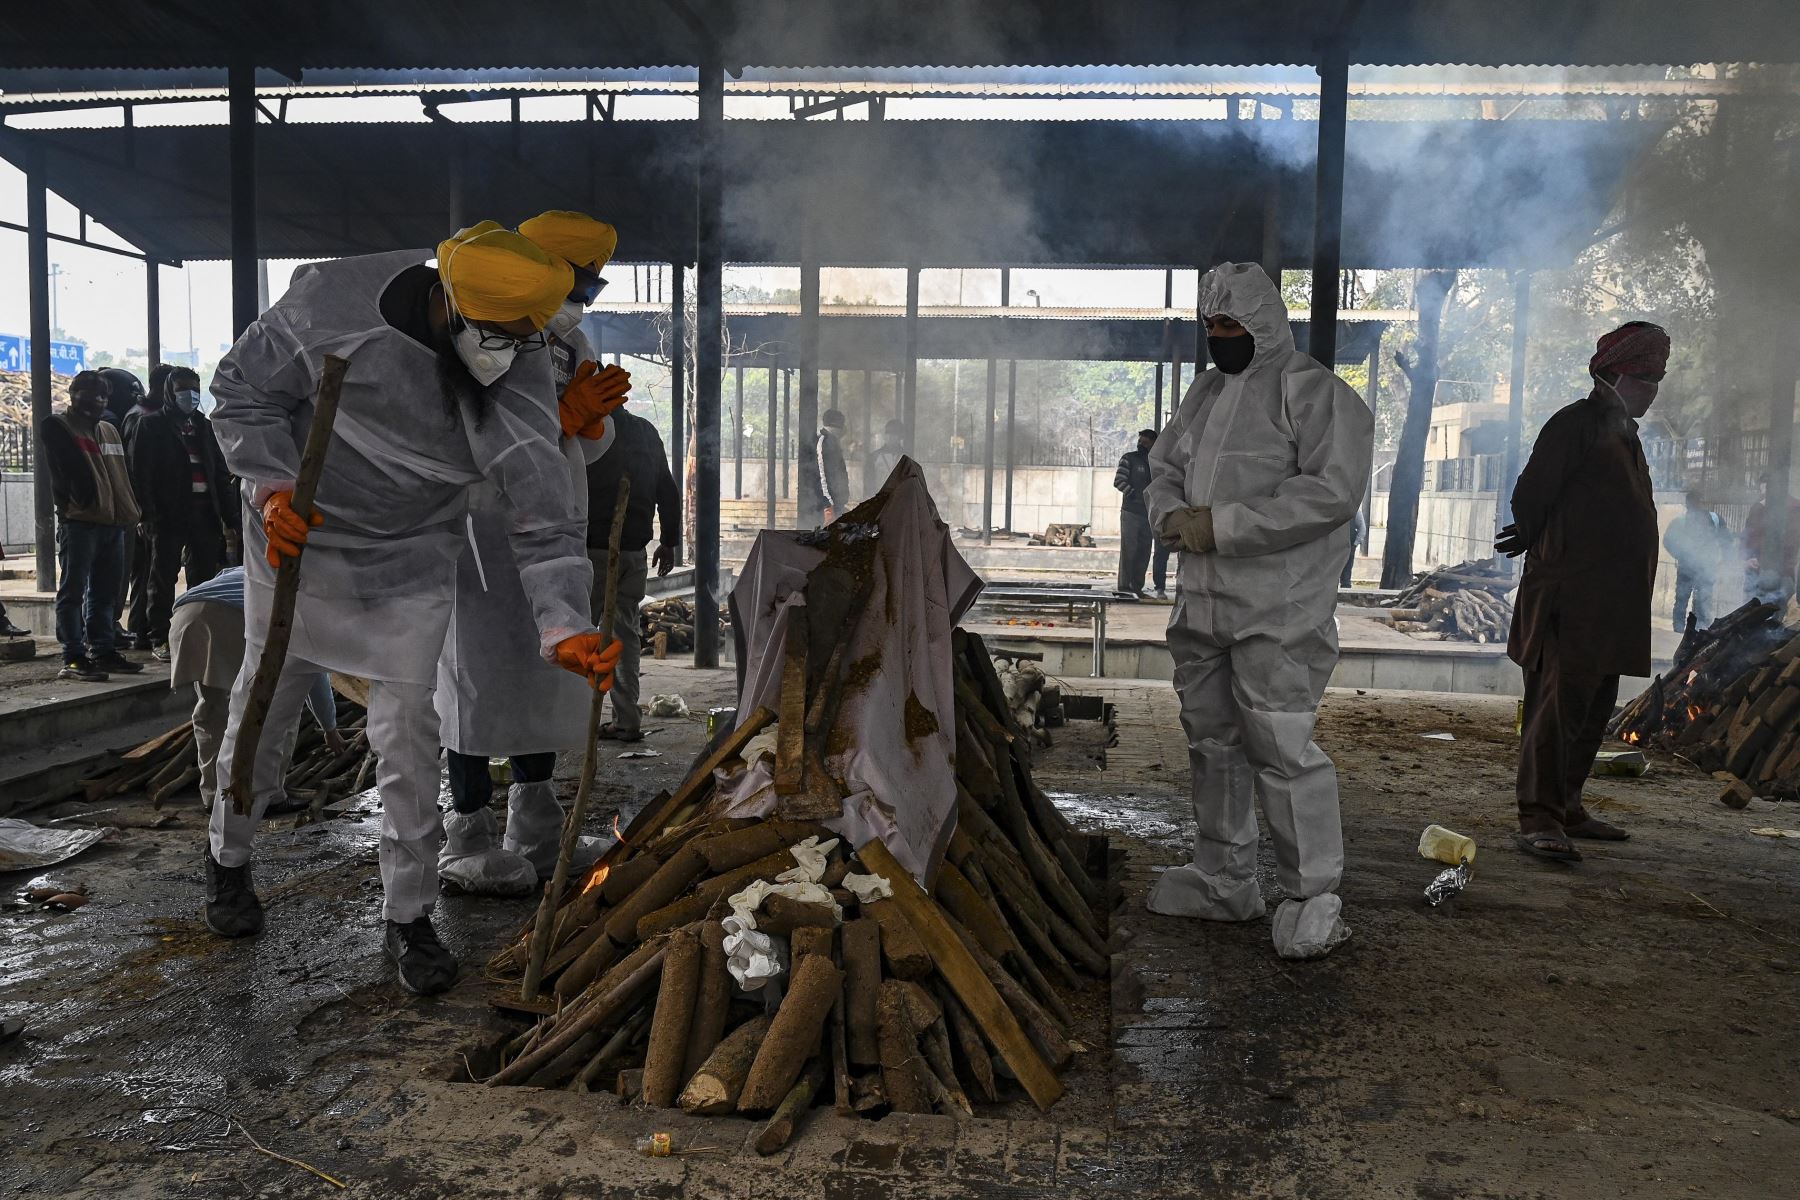 Voluntarios en trajes de equipo de protección personal y familiares realizan los últimos ritos durante la cremación de una persona que murió debido al coronavirus Covid-19, en un crematorio en Nueva Delhi. Foto: AFP